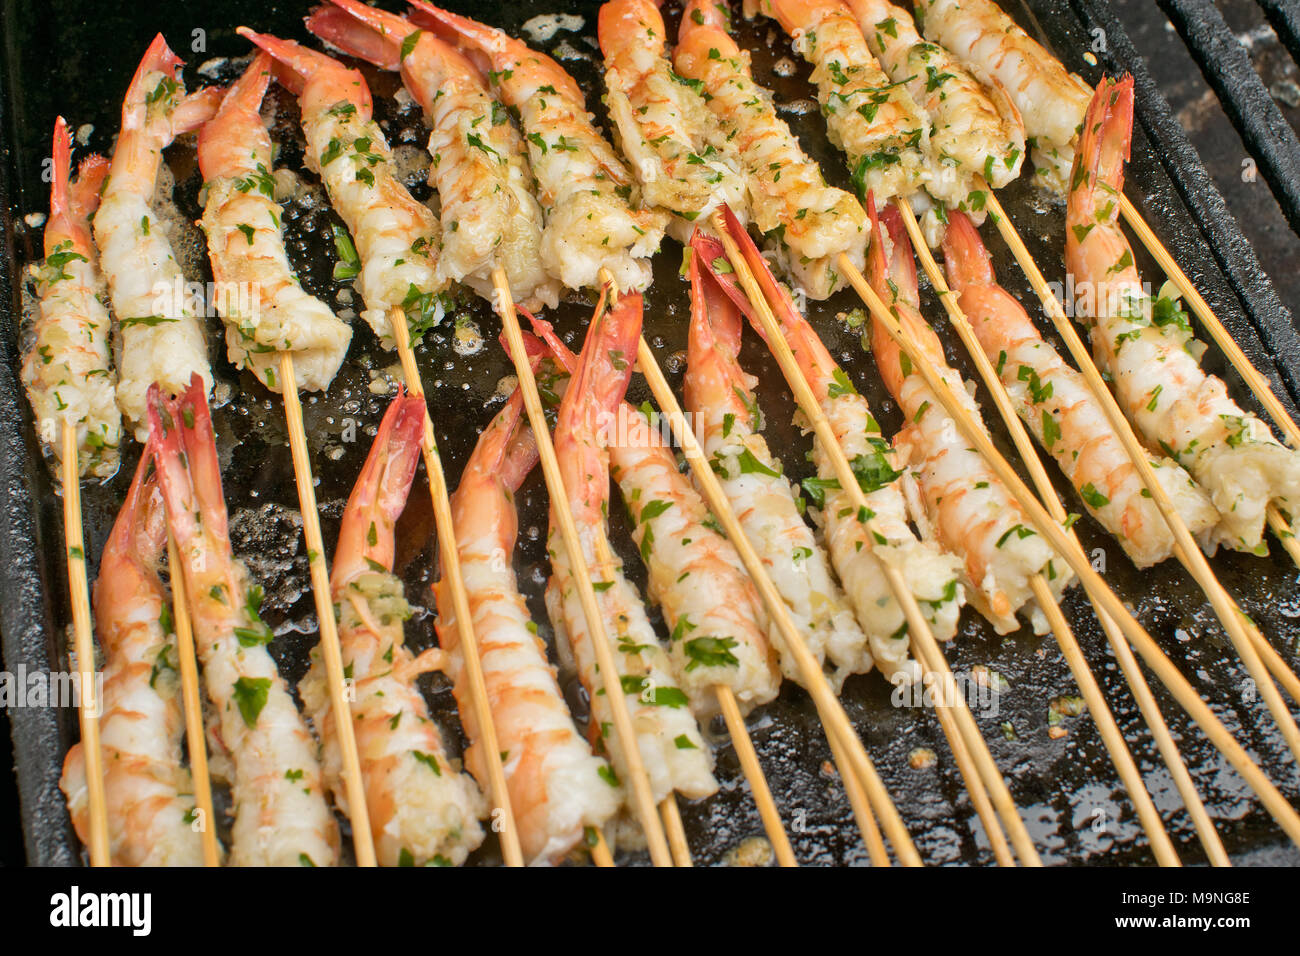 Tasty BBQ prawn skewers. In Australia Stock Photo - Alamy